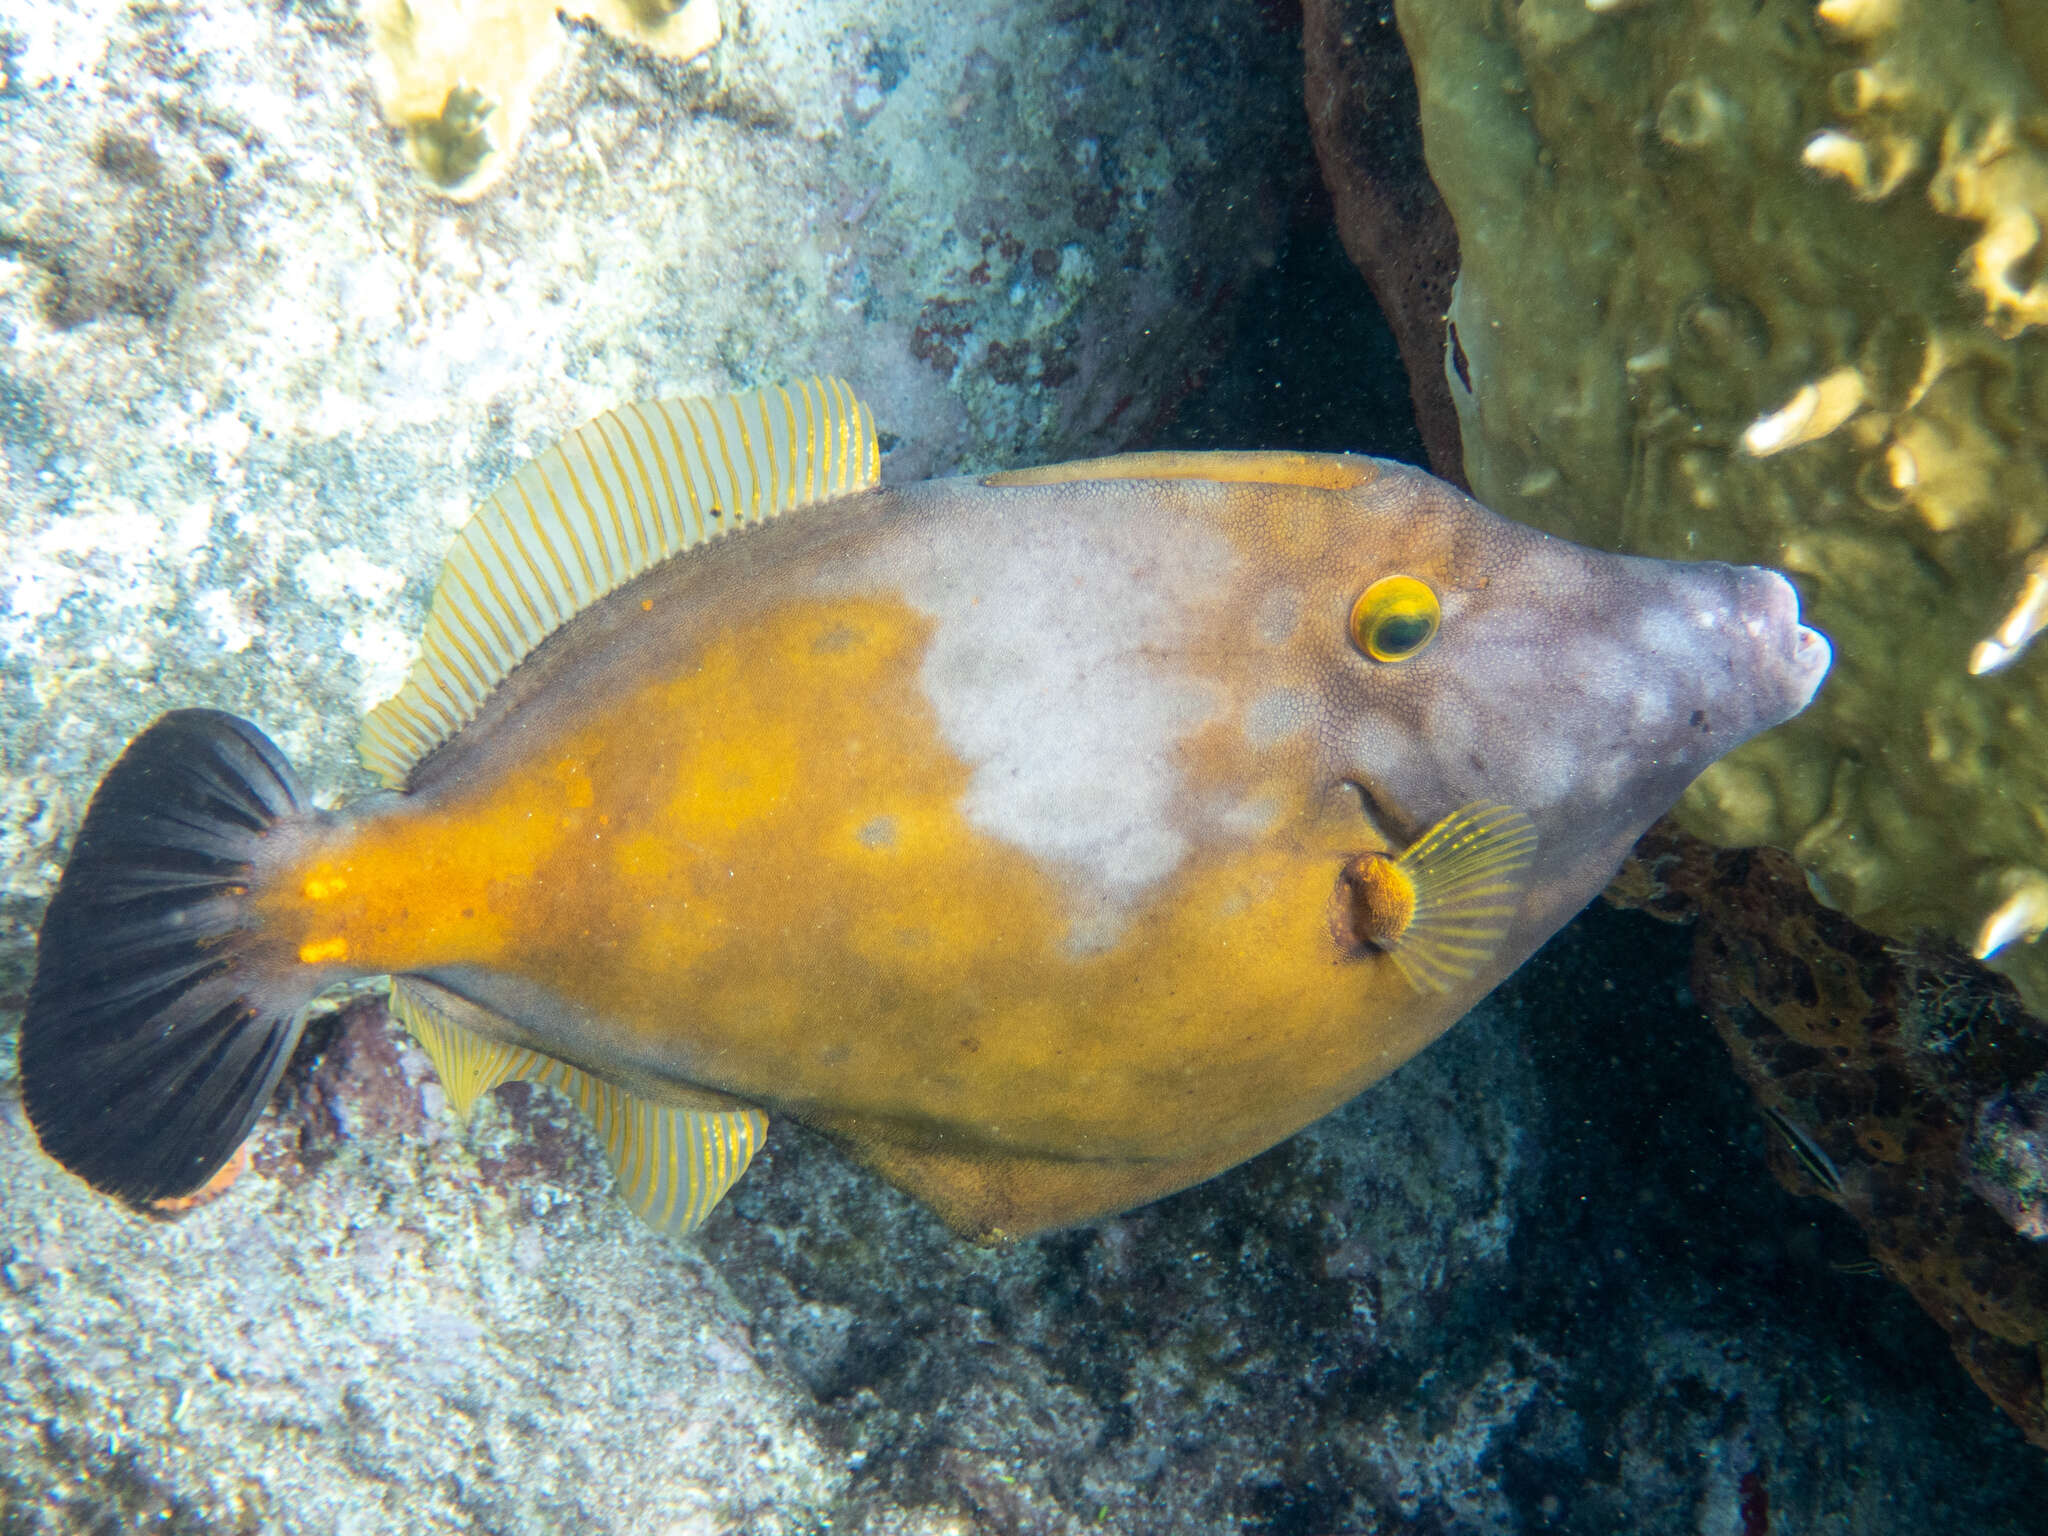 Image of Whitespotted Filefish